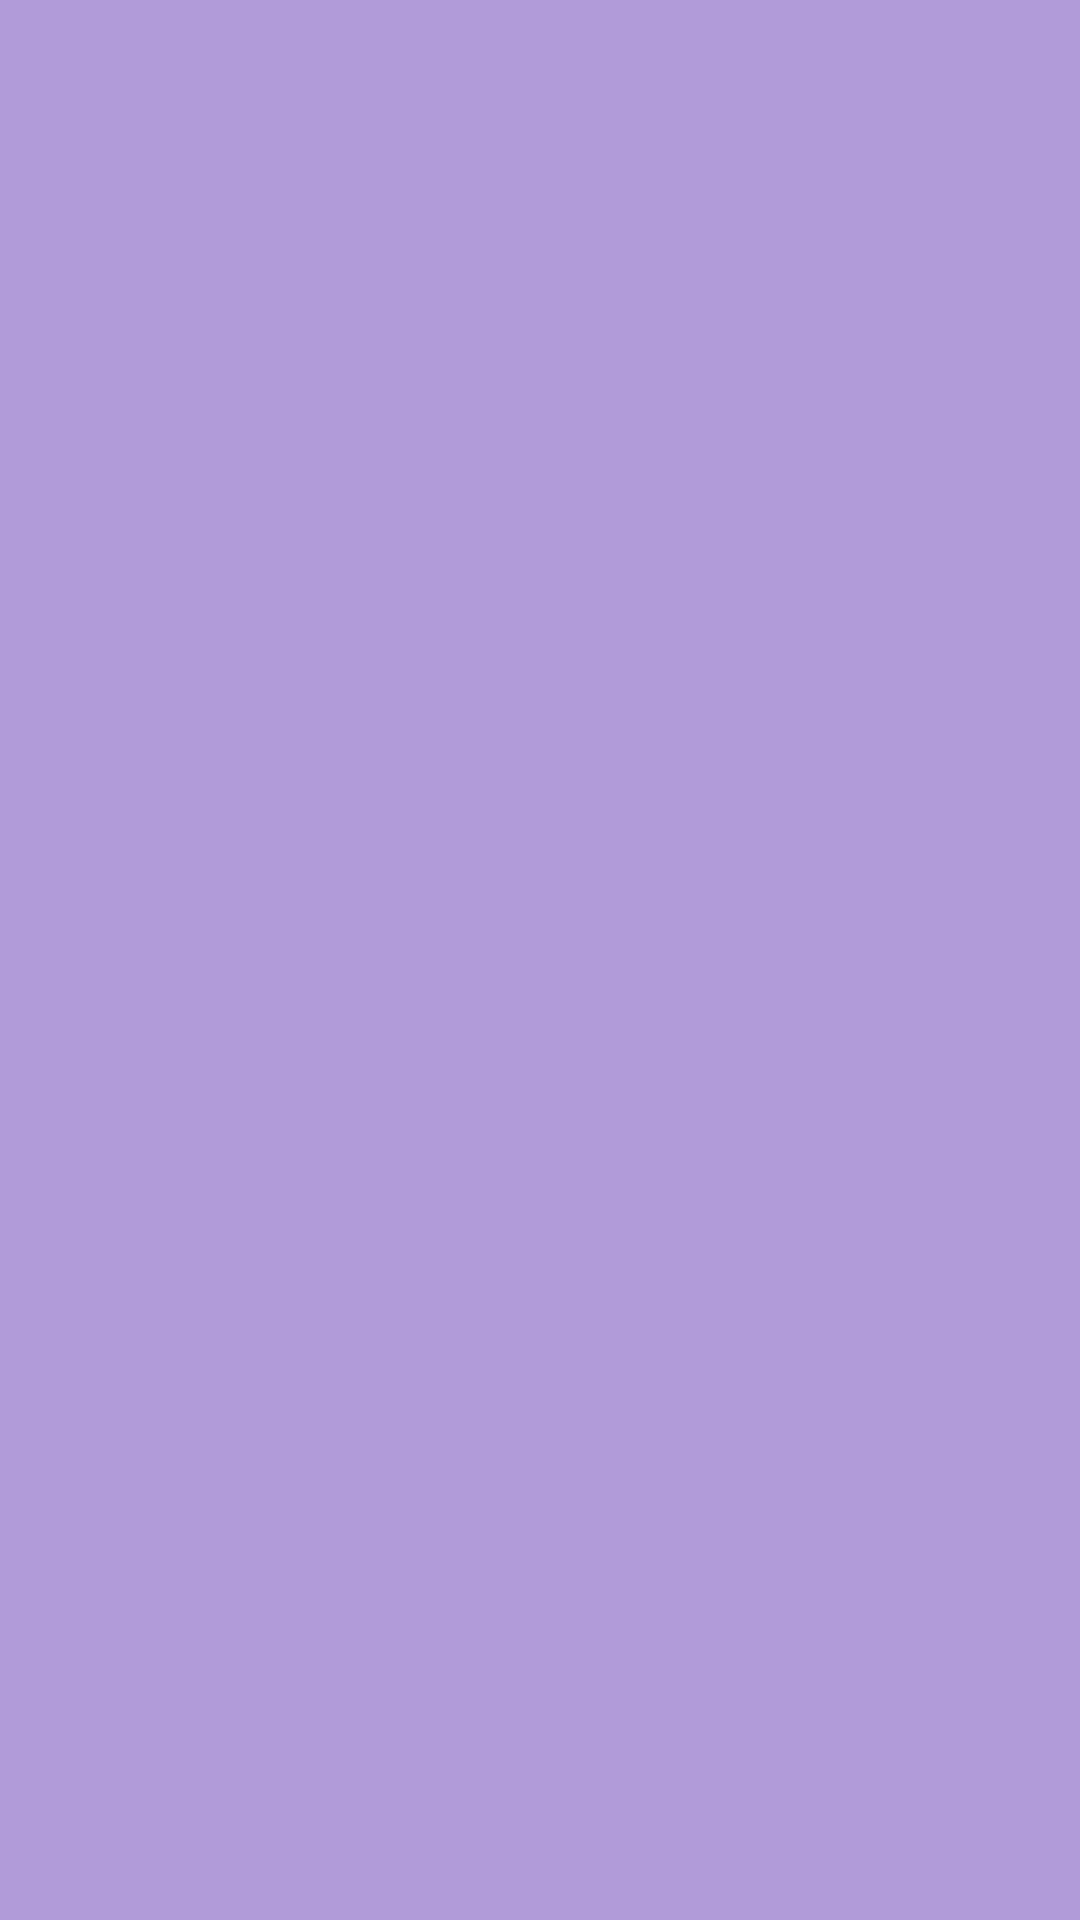 Light pastel purple background: Nền tảng màu tím nhạt sẽ mang đến cho bạn một trải nghiệm đầy màu sắc và tinh tế. Những ánh sáng lung linh và hiệu ứng màu sắc độc đáo sẽ mang lại cho bạn những giây phút thư giãn đầy tuyệt vời. Một nền tảng màu tím nhạt chắc chắn sẽ làm hài lòng cả những khách hàng khó tính nhất.